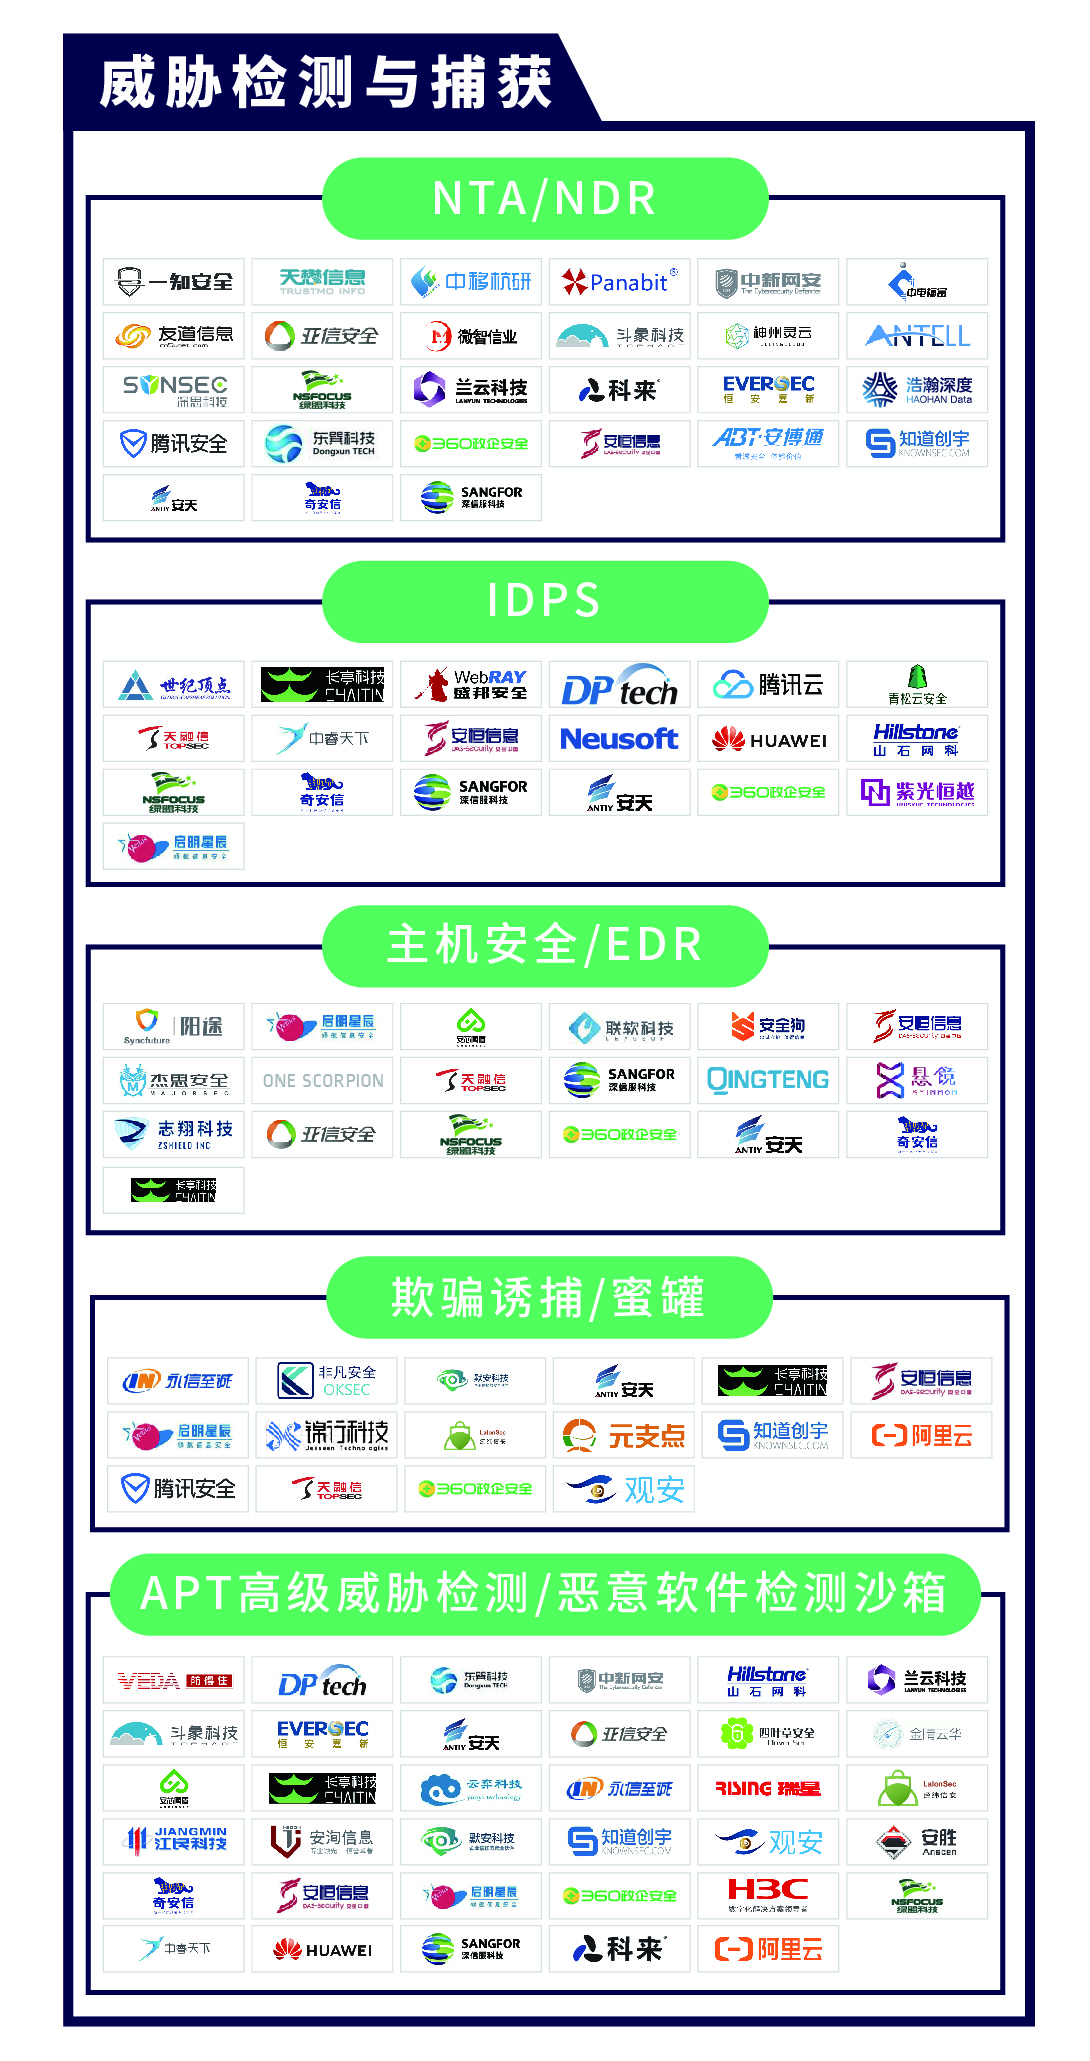 《CCSIP 2020中国网络安全产业全景图》正式发布 | FreeBuf咨询-第12张图片-网盾网络安全培训